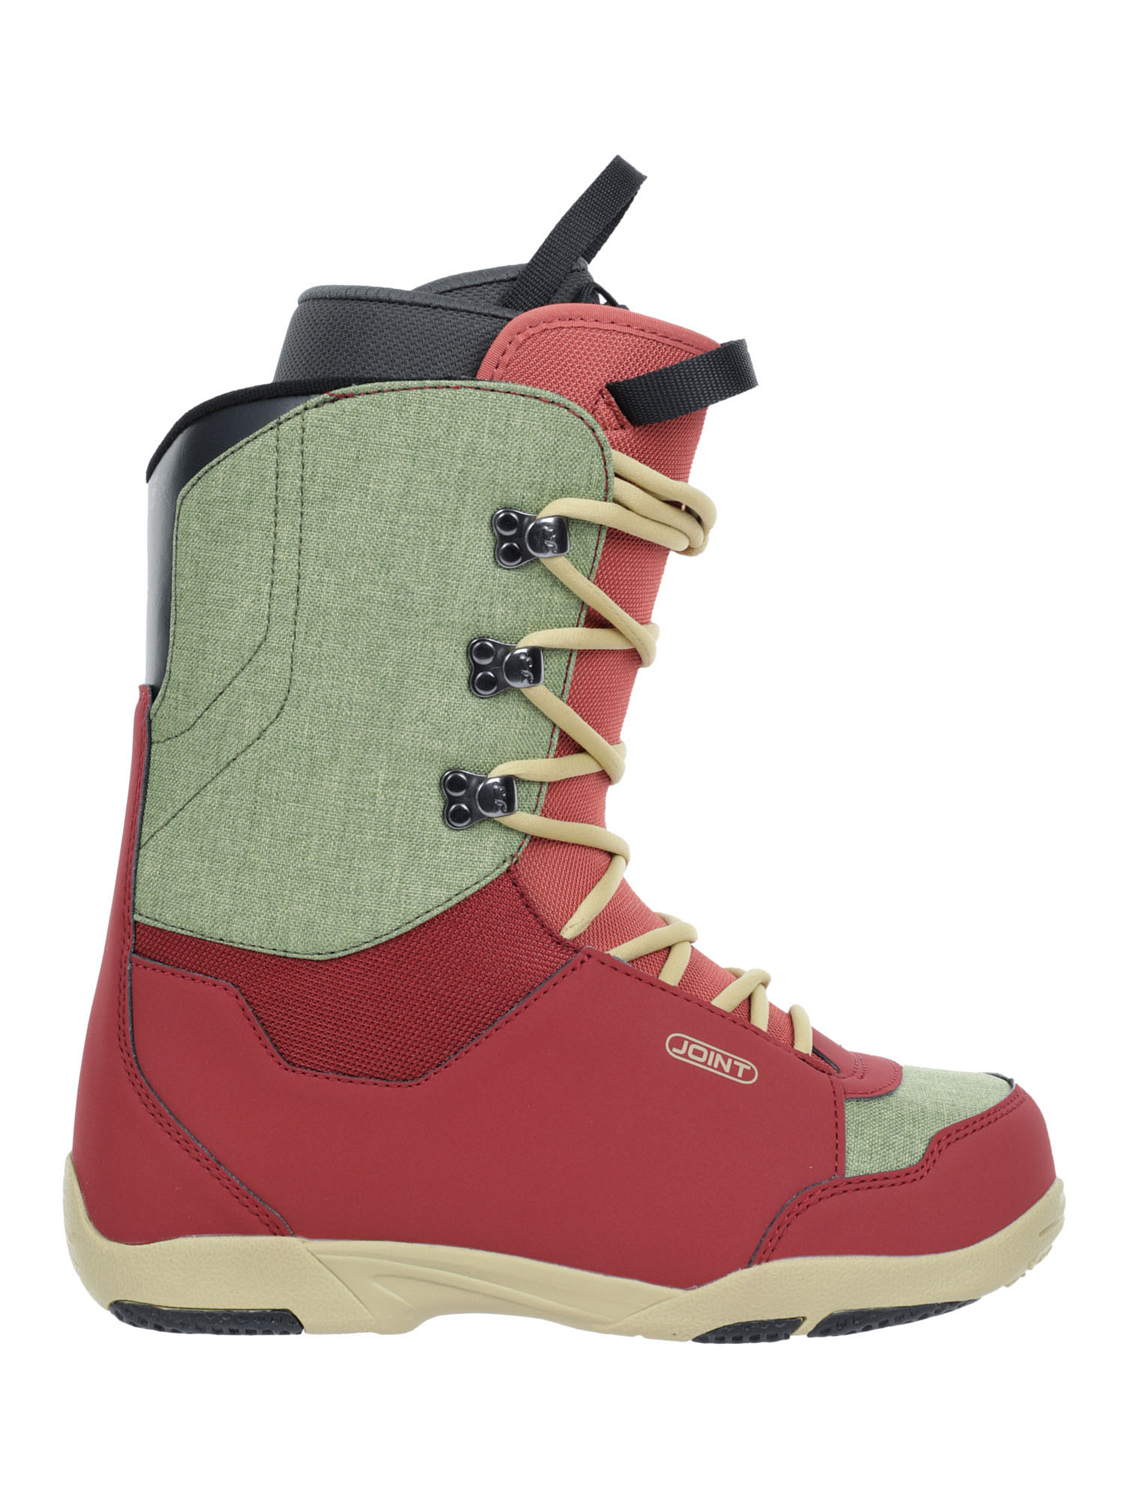 Ботинки для сноуборда Joint Dovetail Dark Red/Light Brown